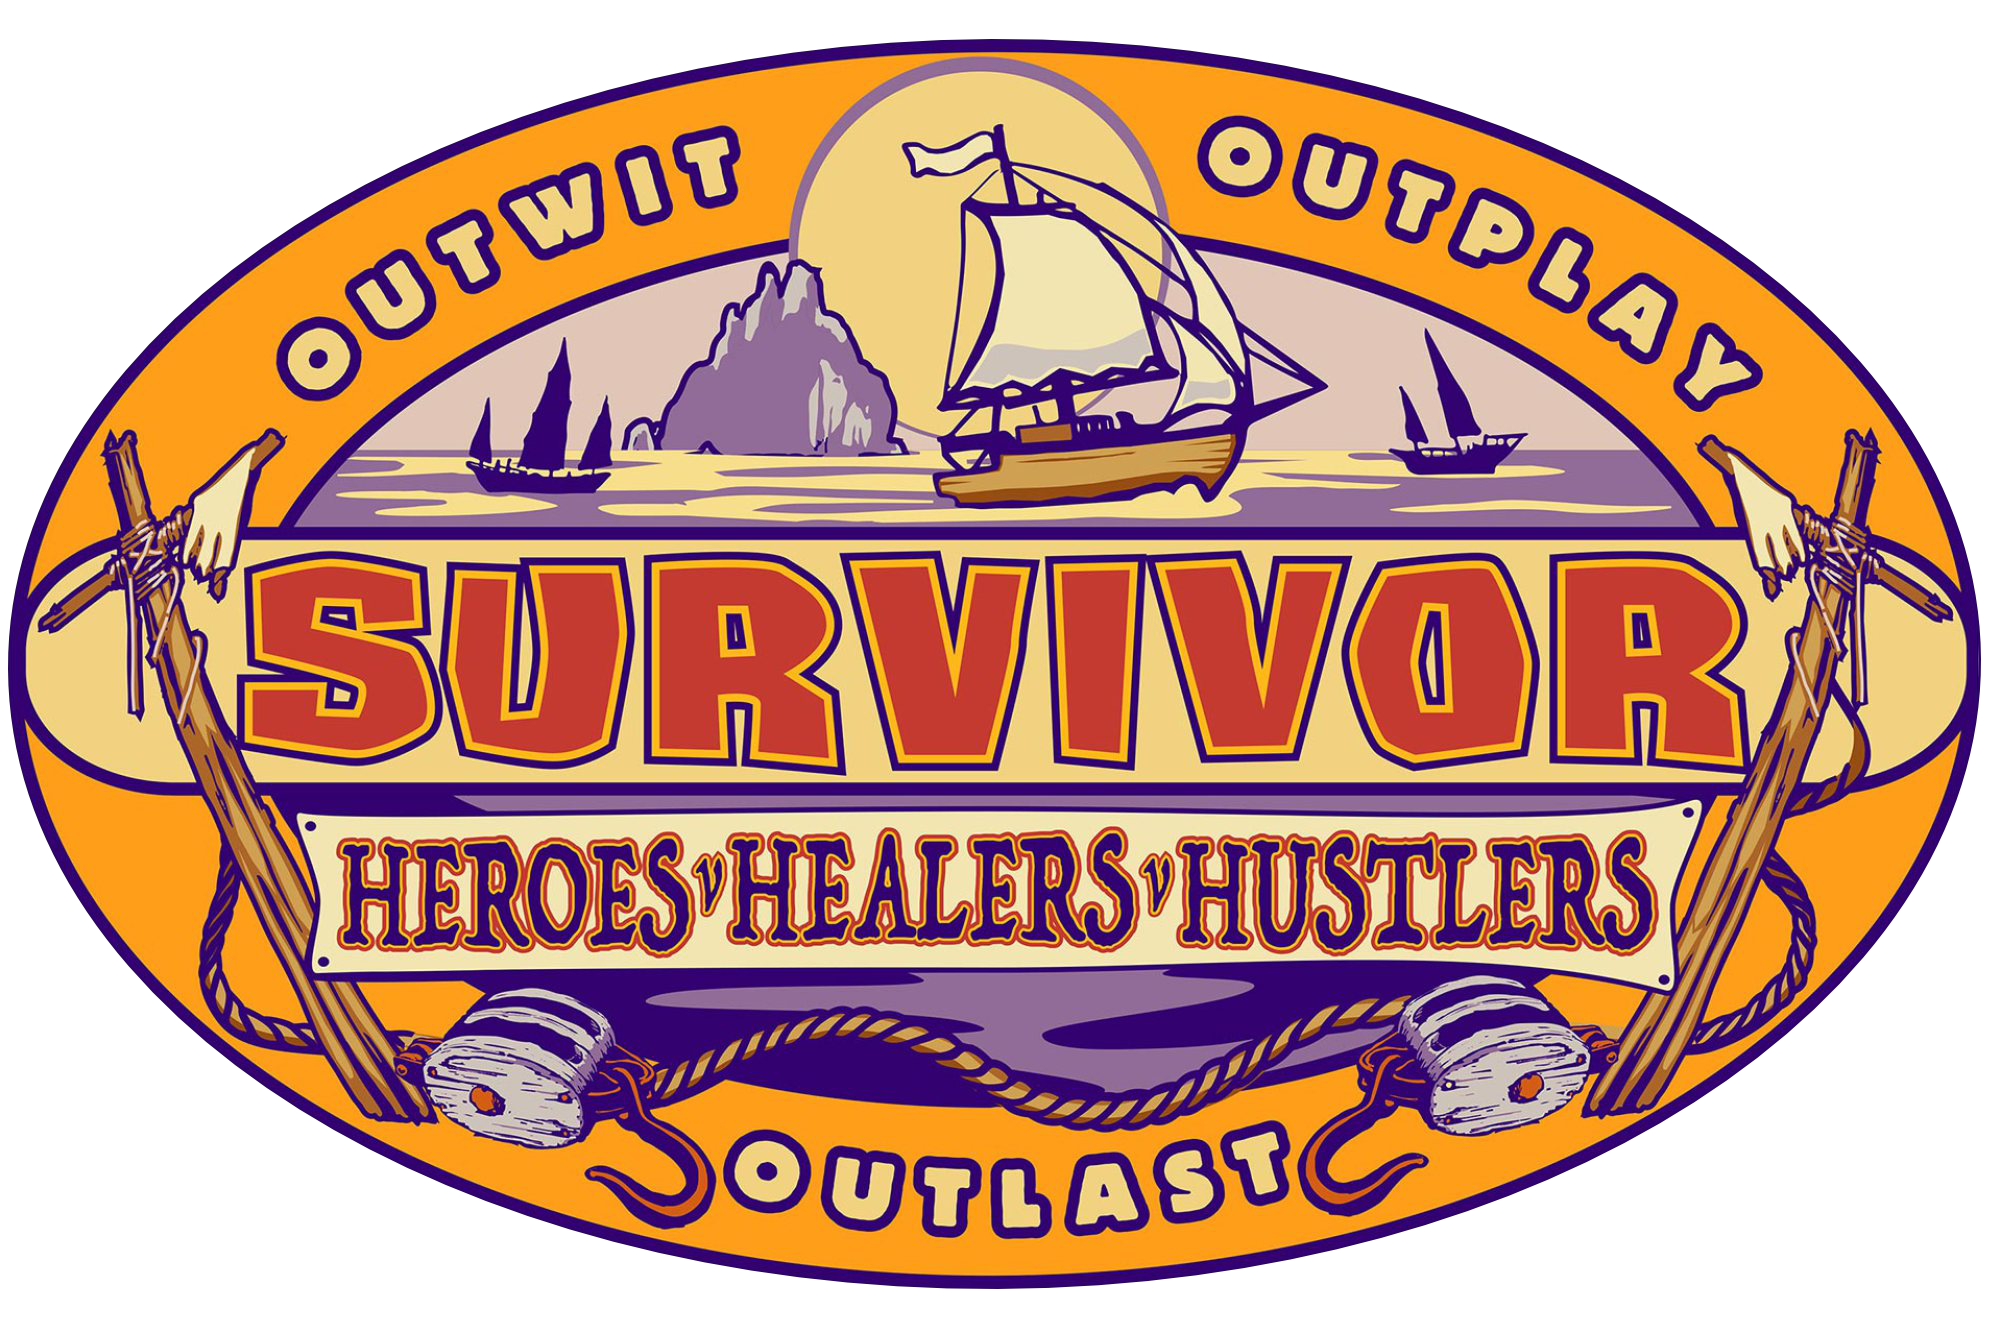 The Best of Survivor - Wikipedia